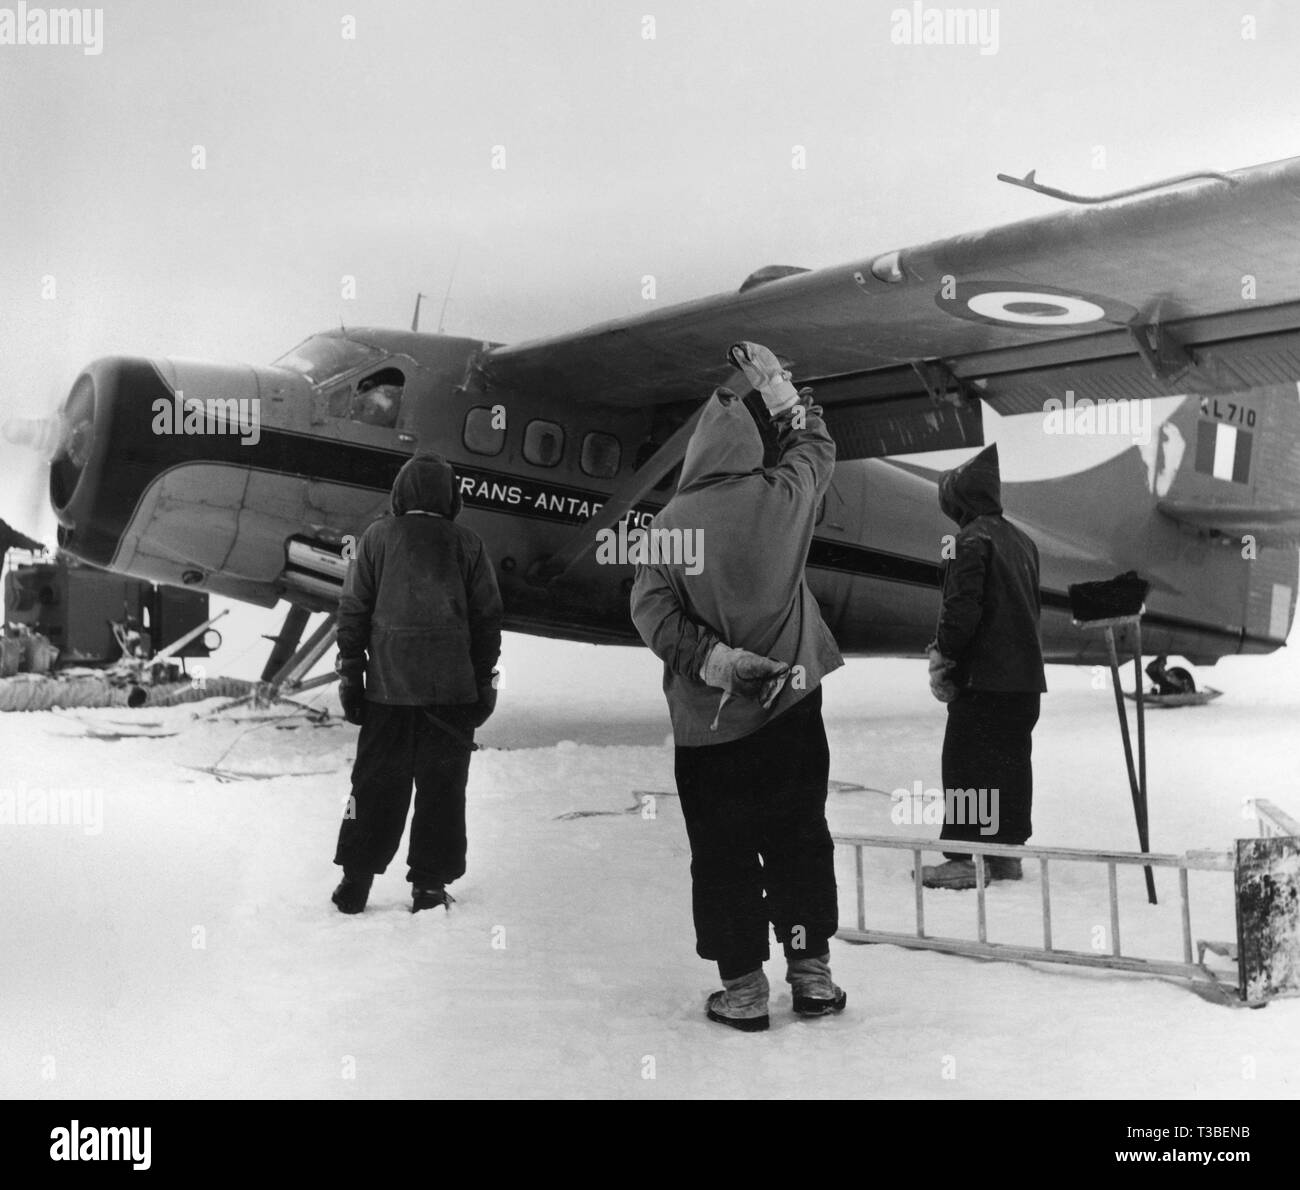 Trans-Arctique expédition du Commonwealth, au sud de la base de glace, 1957-1958 Banque D'Images